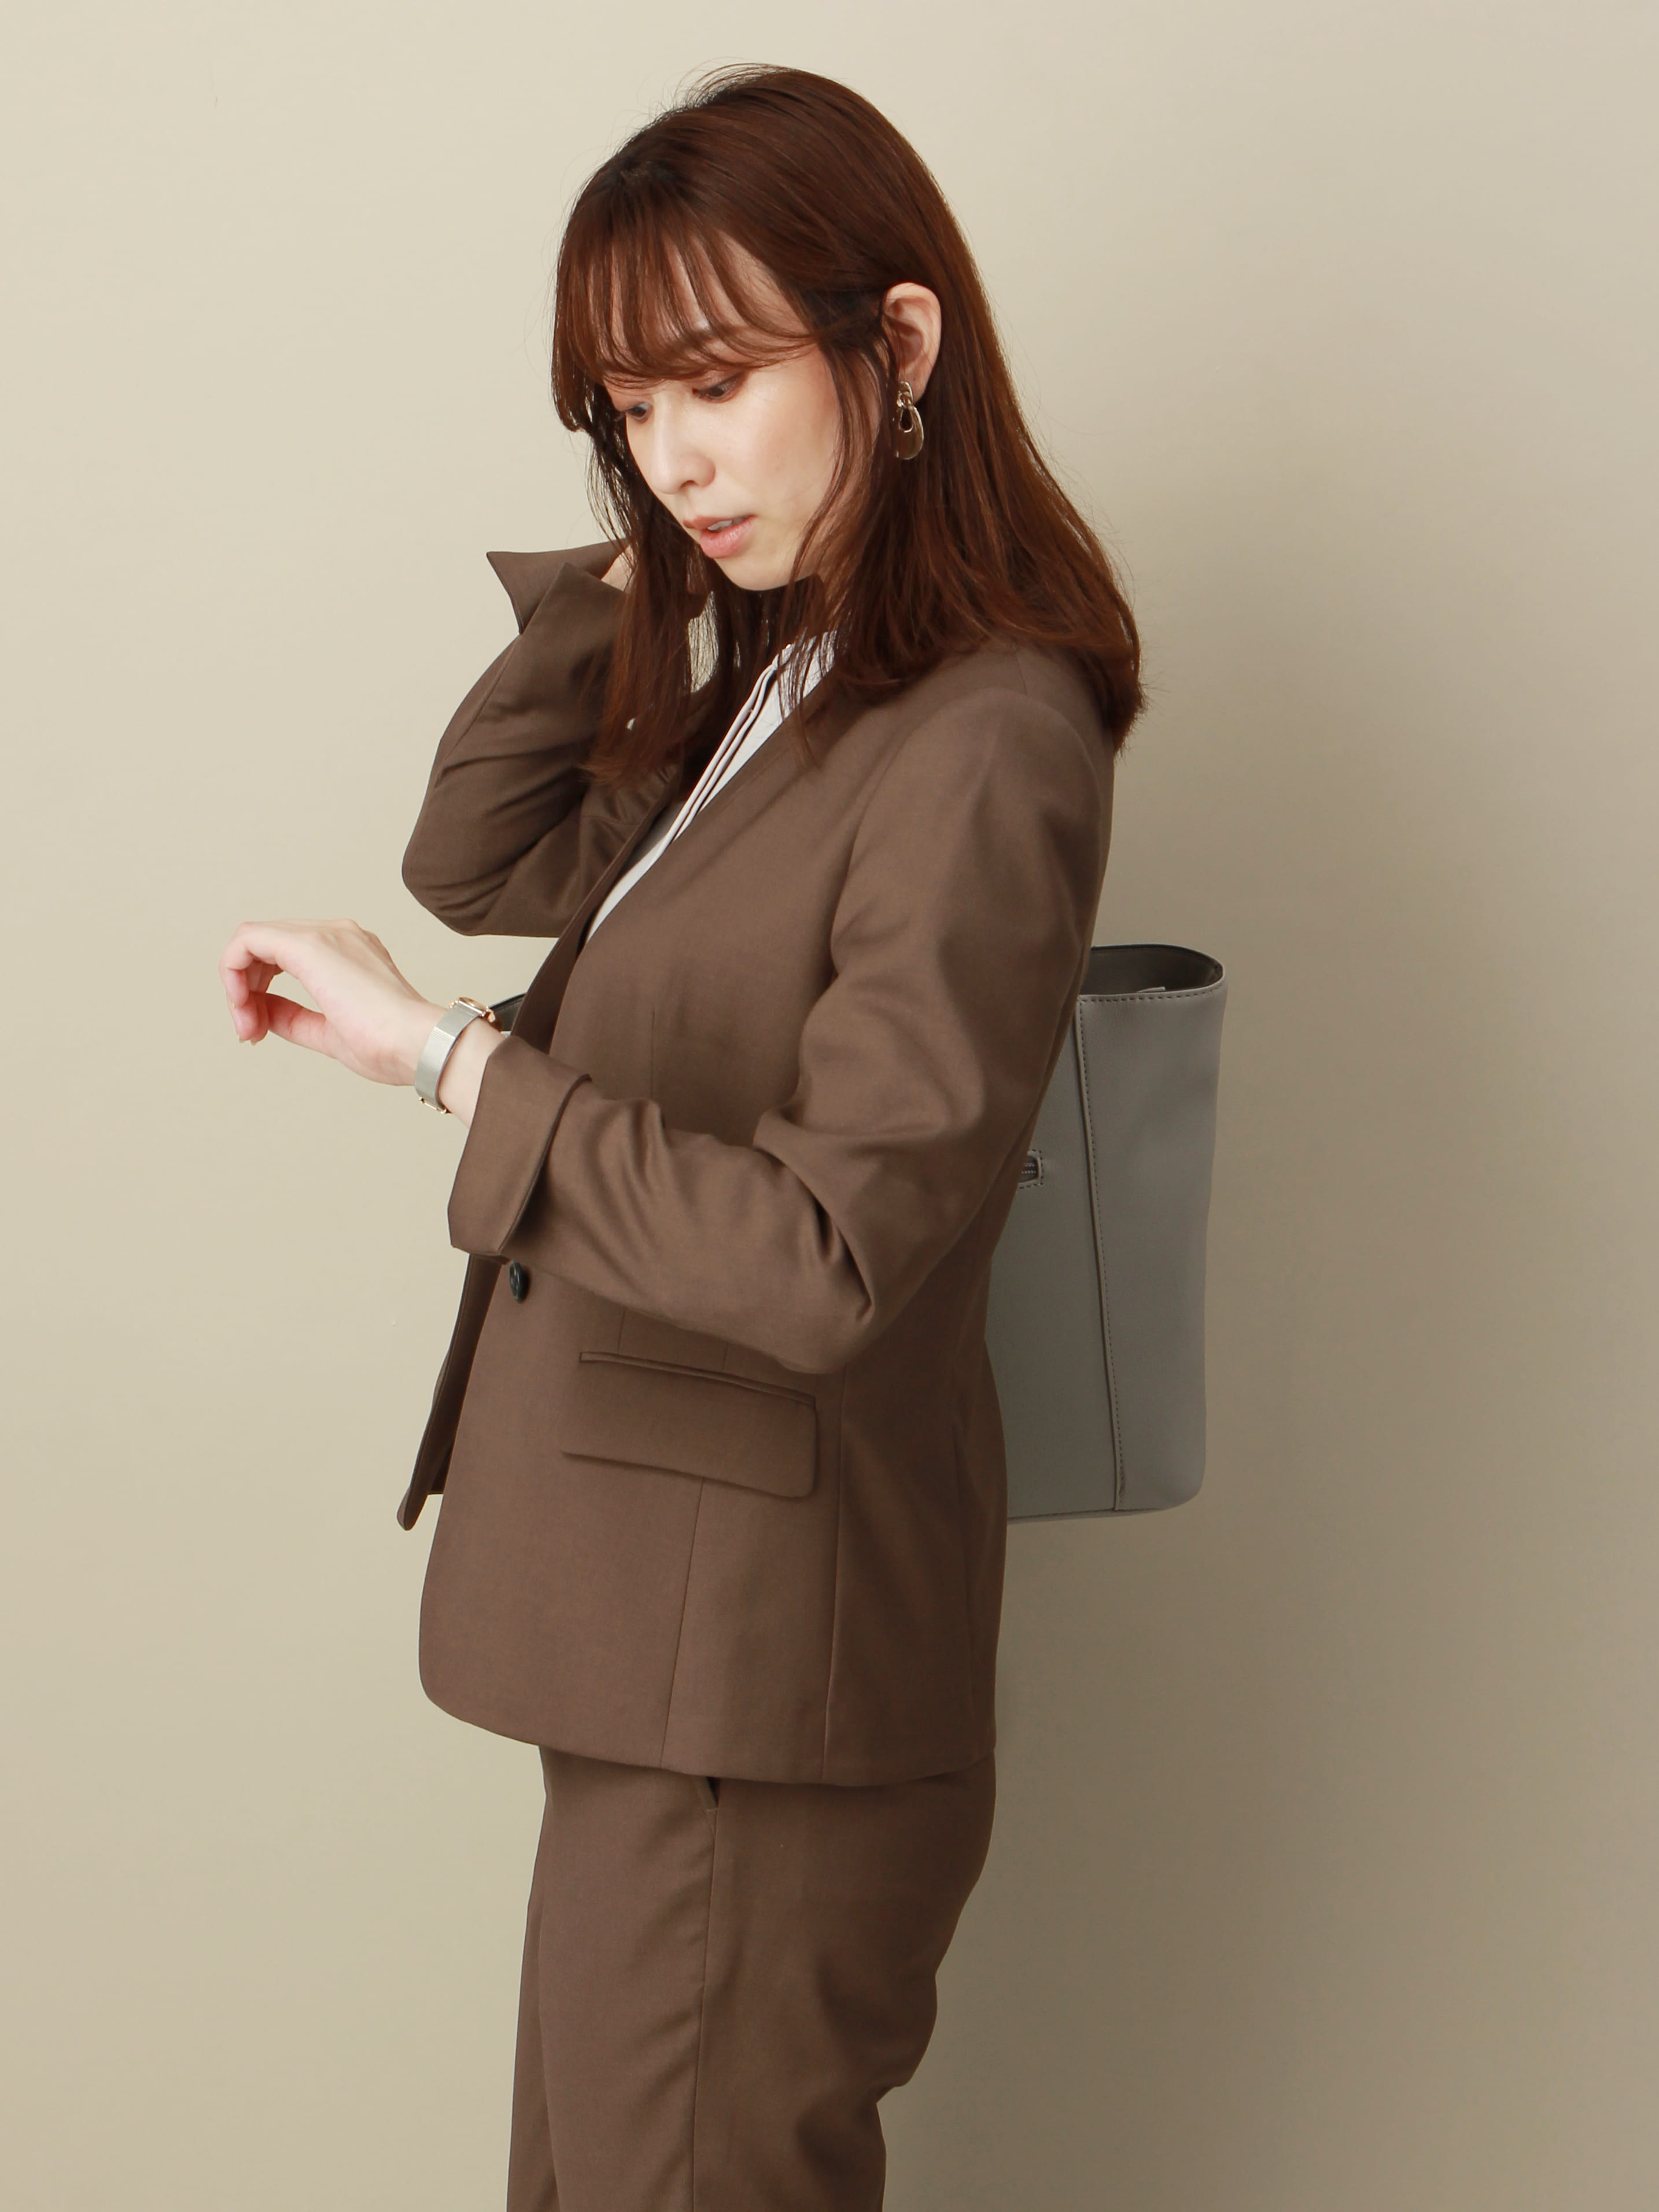 こういうの欲しかった 働く女性が安心して着られるスーツ Web限定商品 The Suit Company Universal Language Online Shop